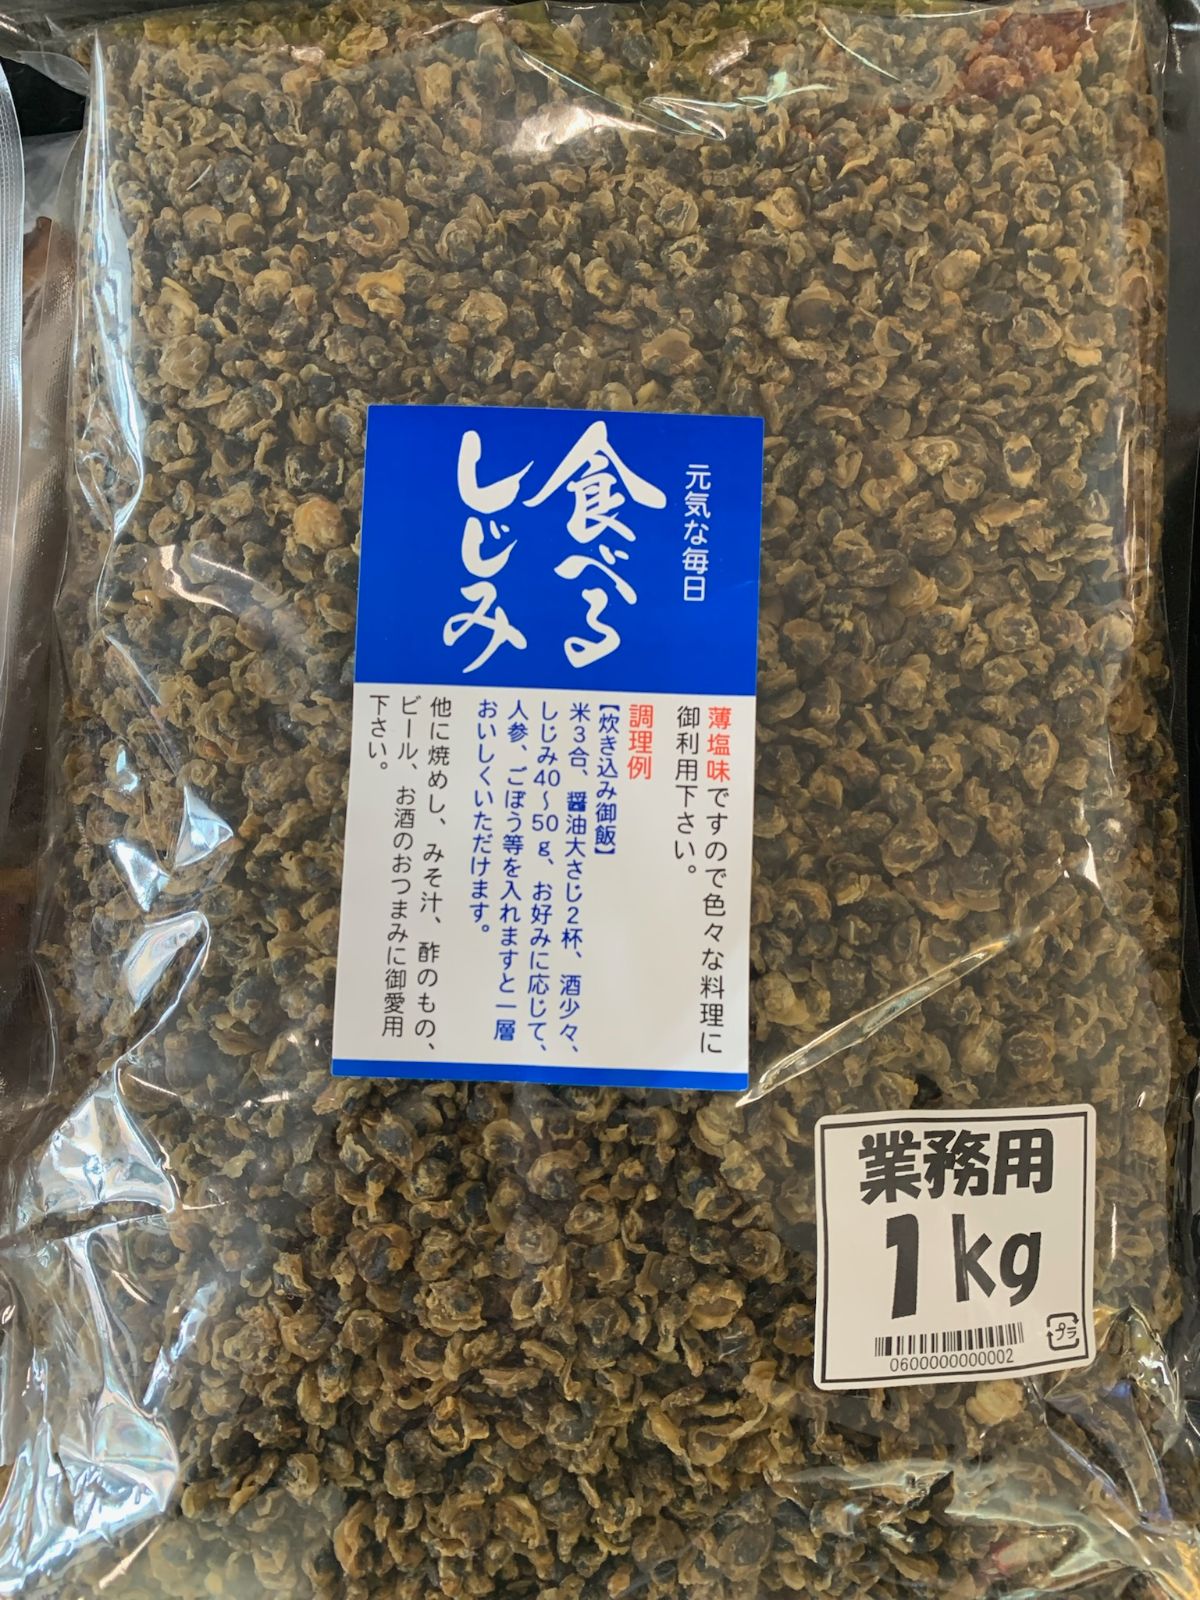 味付乾燥しじみ 業務用1kg - 豊岡食品 - メルカリ